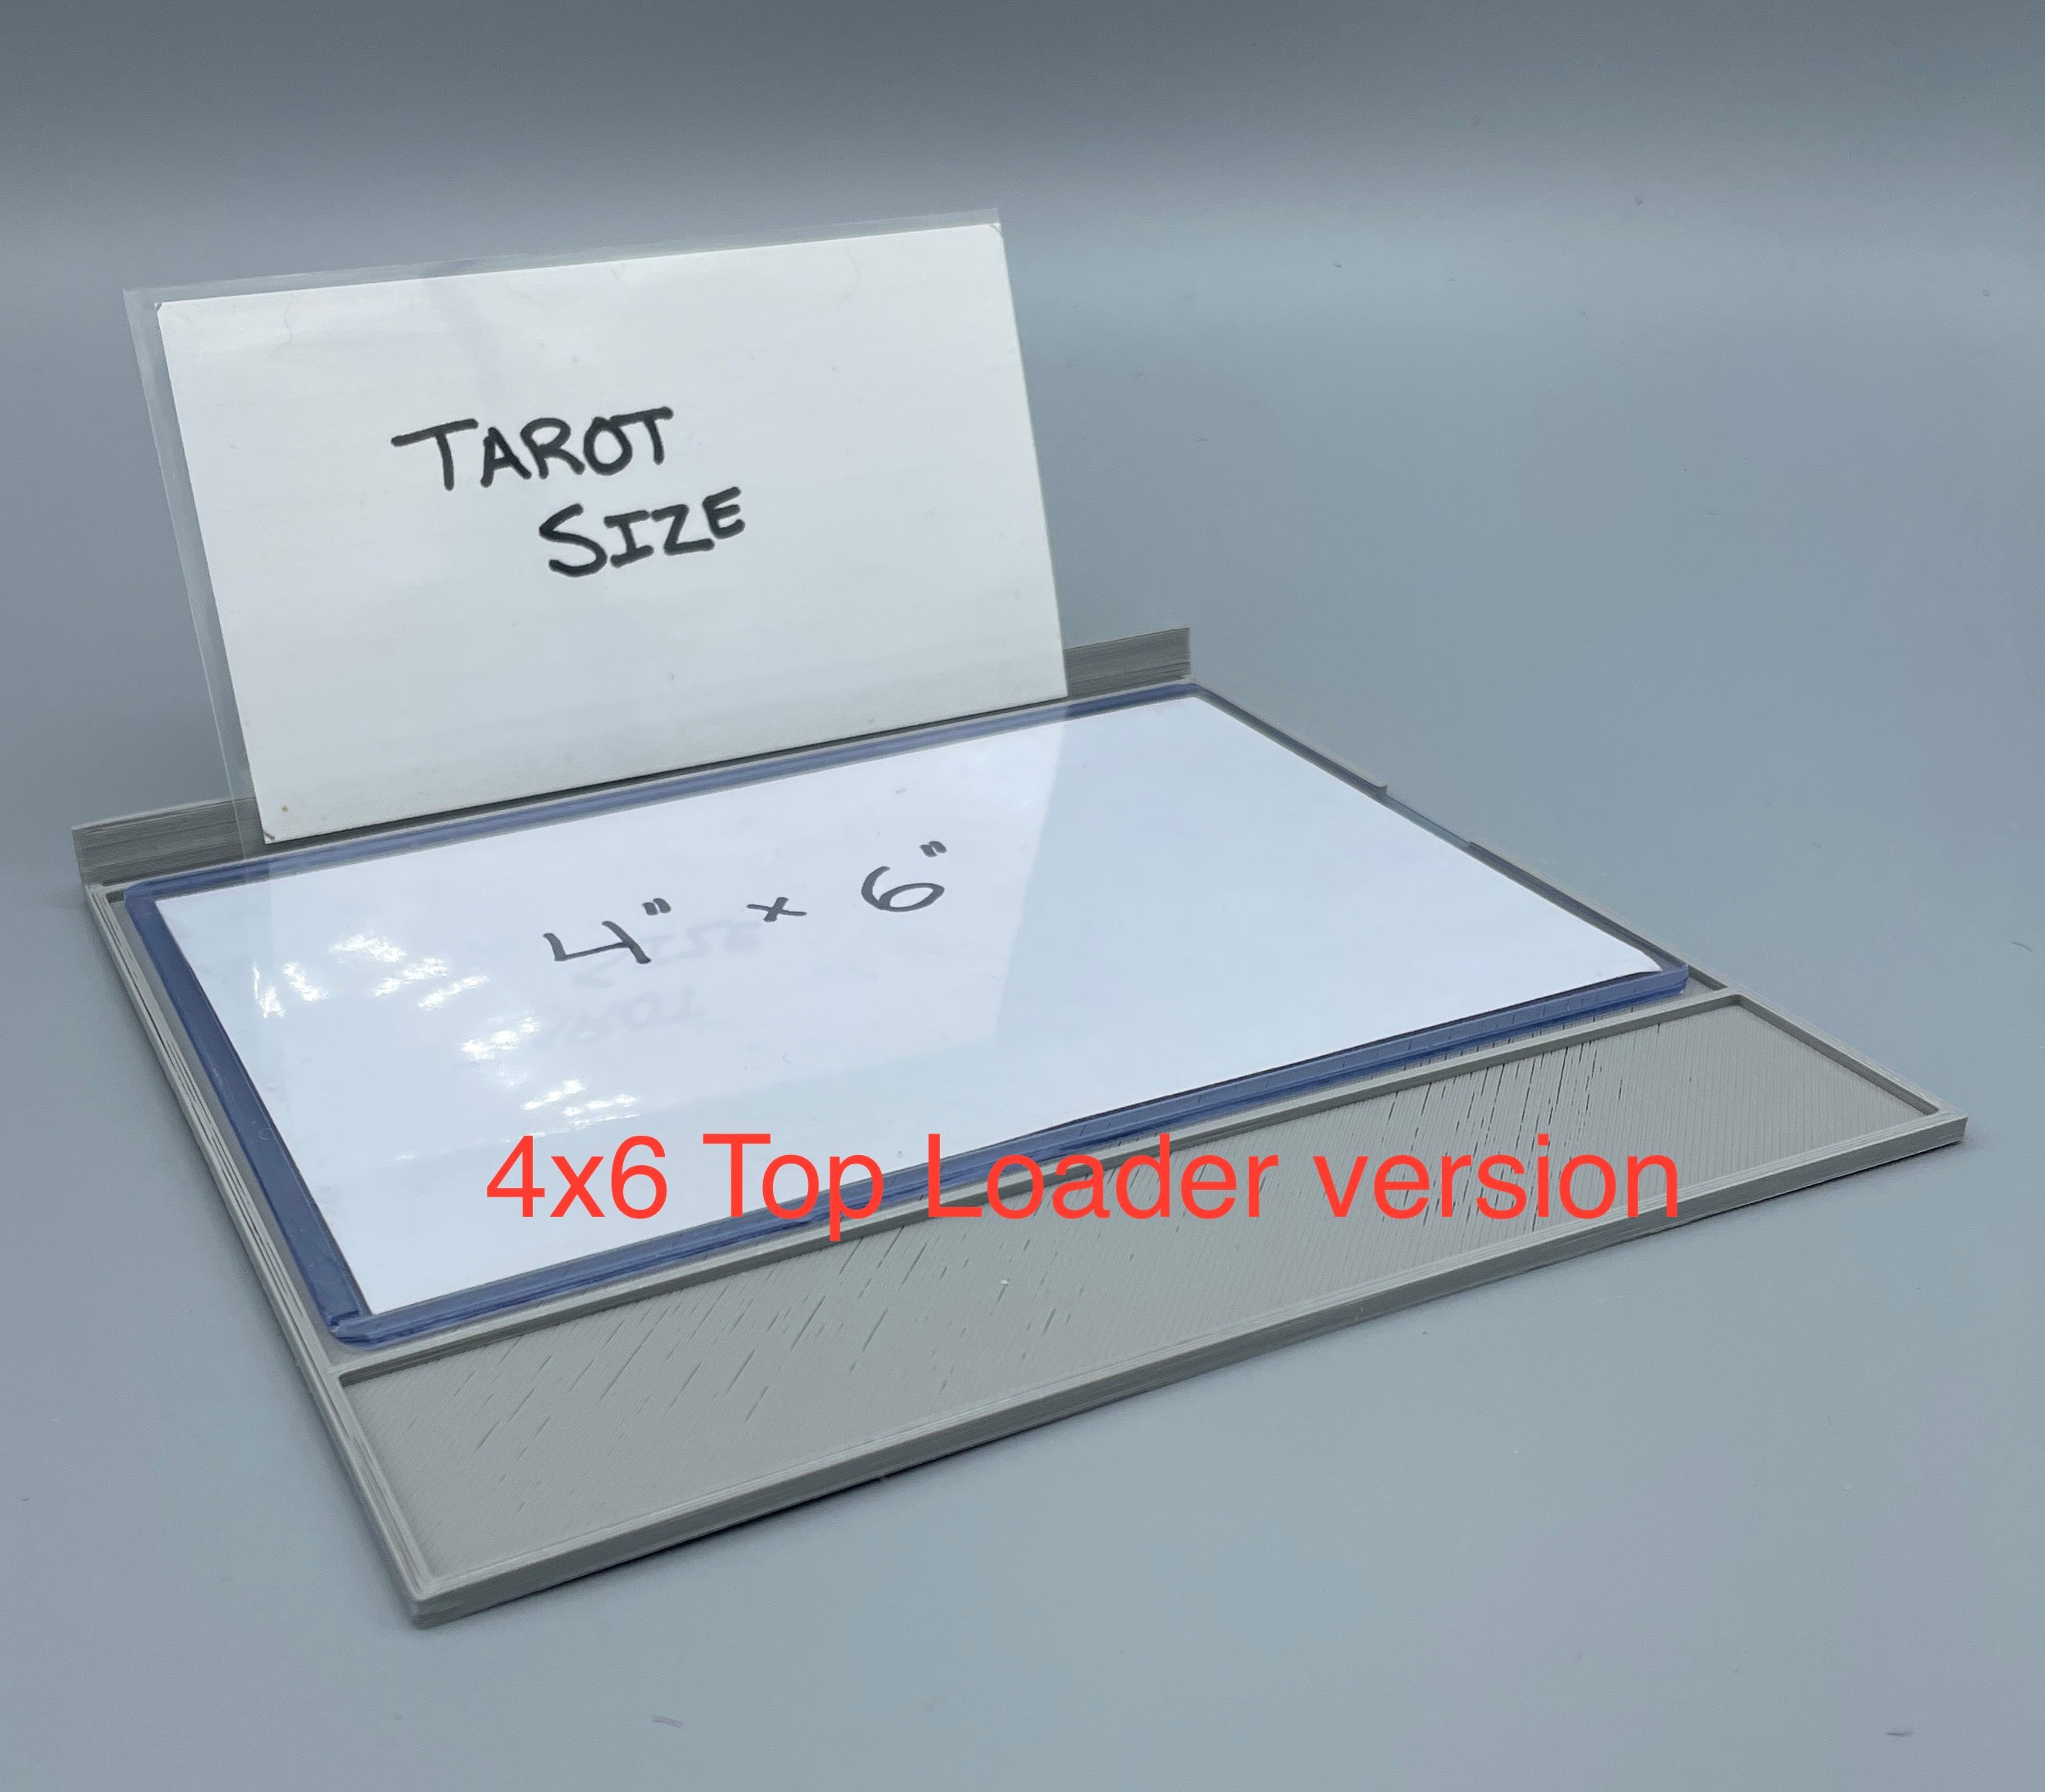 Card Trays - Digital STL Files